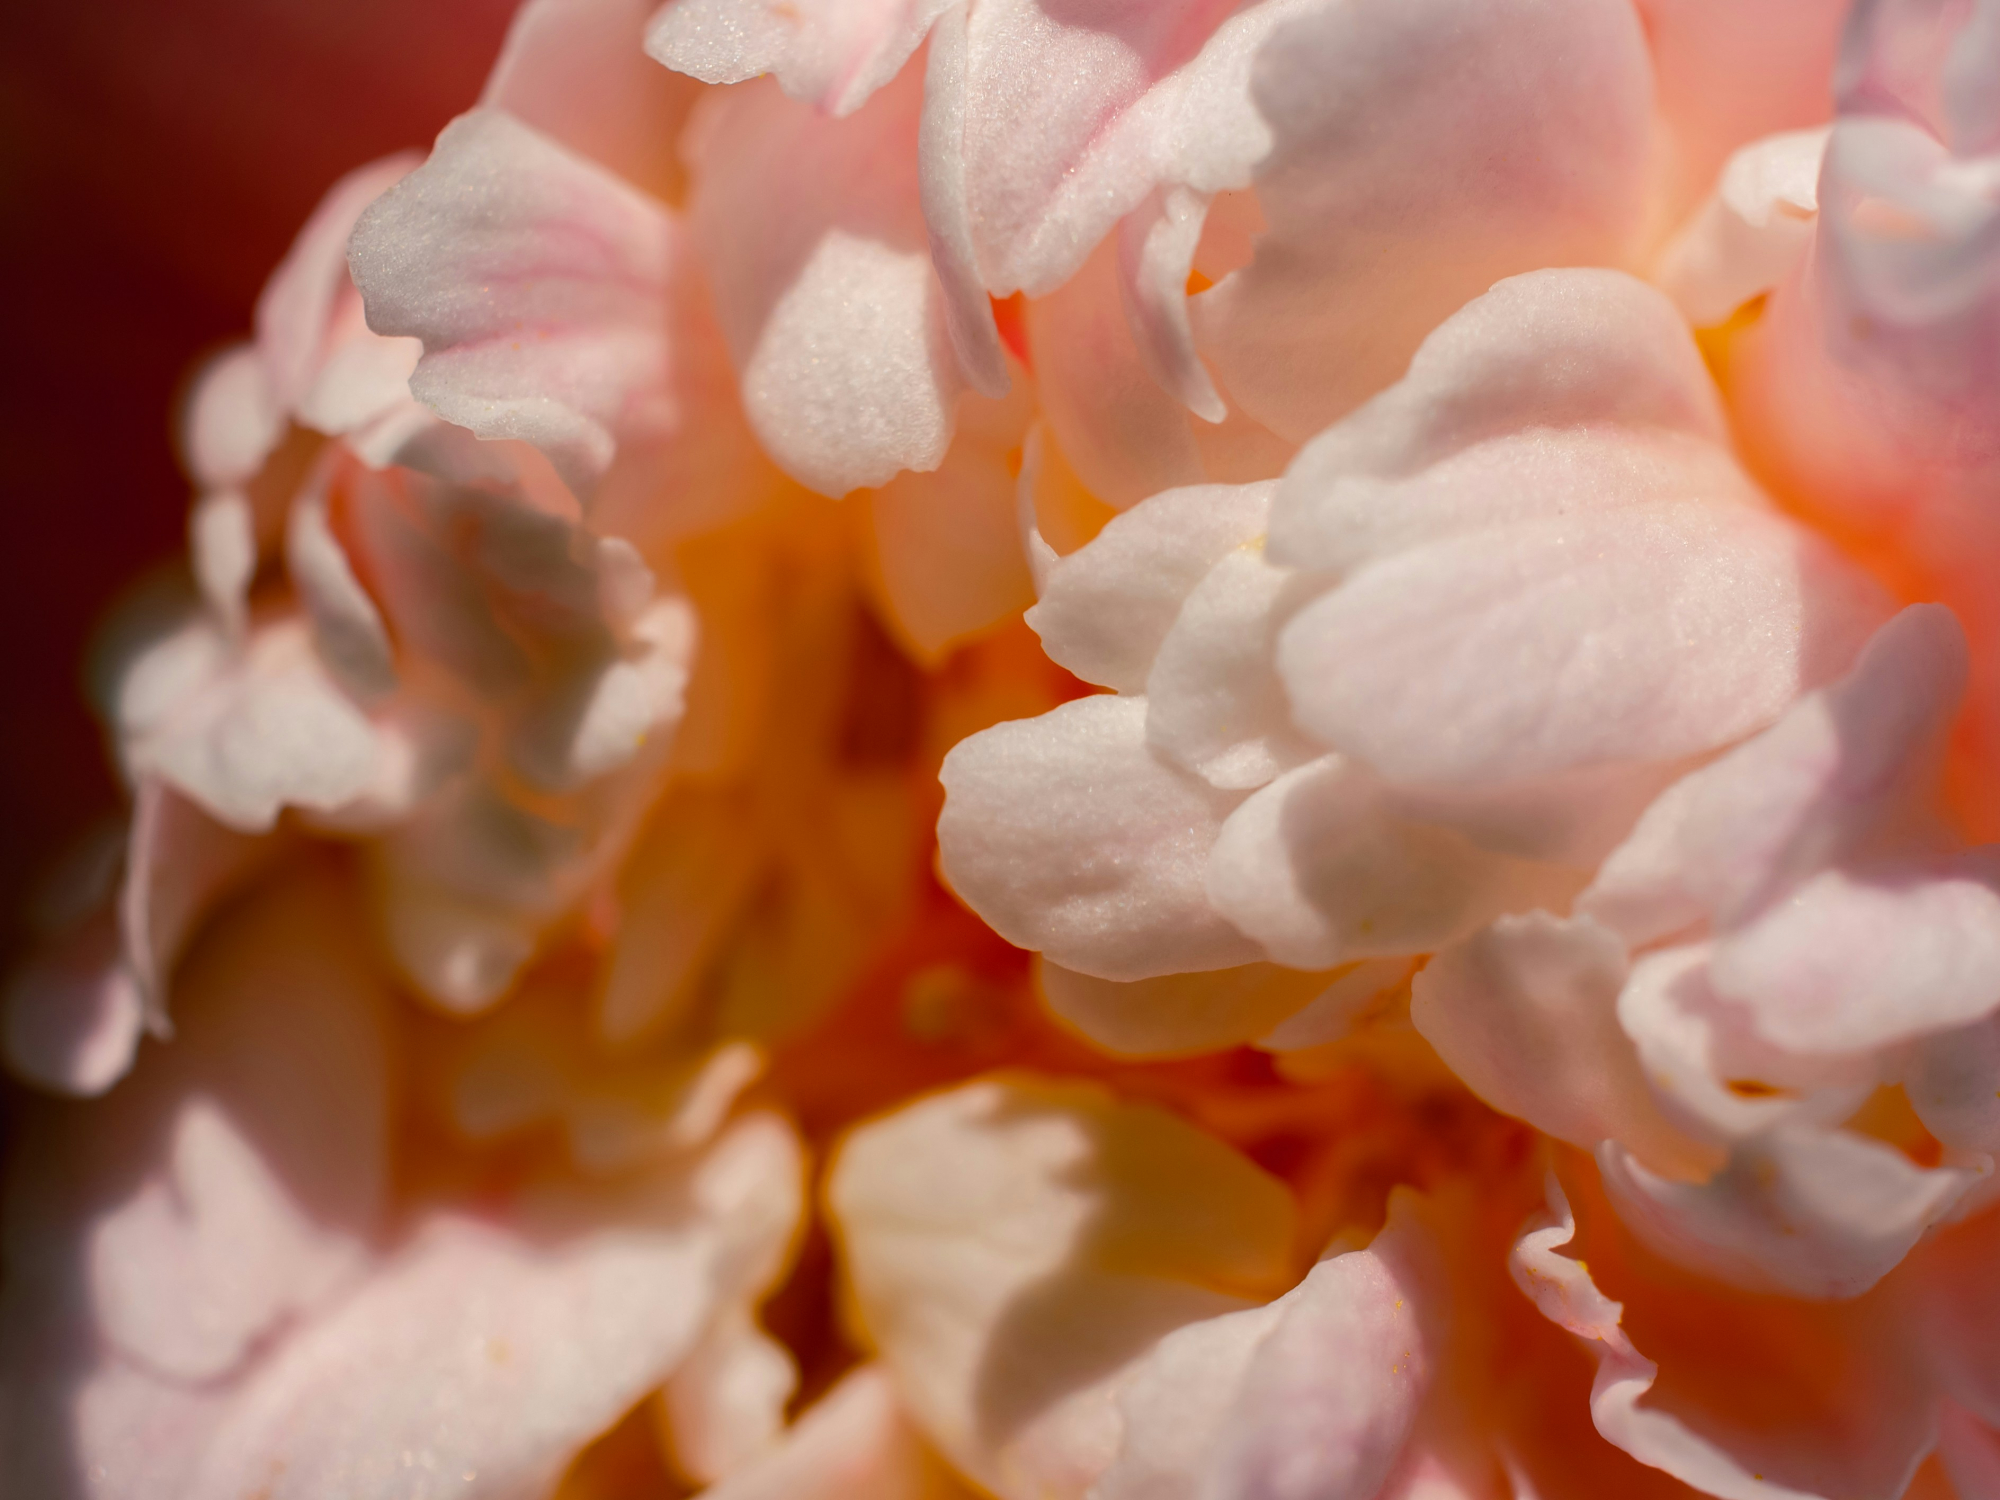 découvrez l'univers envoûtant du camélia, une fleur emblématique de beauté et de délicatesse. apprenez-en plus sur les variétés, les couleurs et les significations associées à cette merveille de la nature.